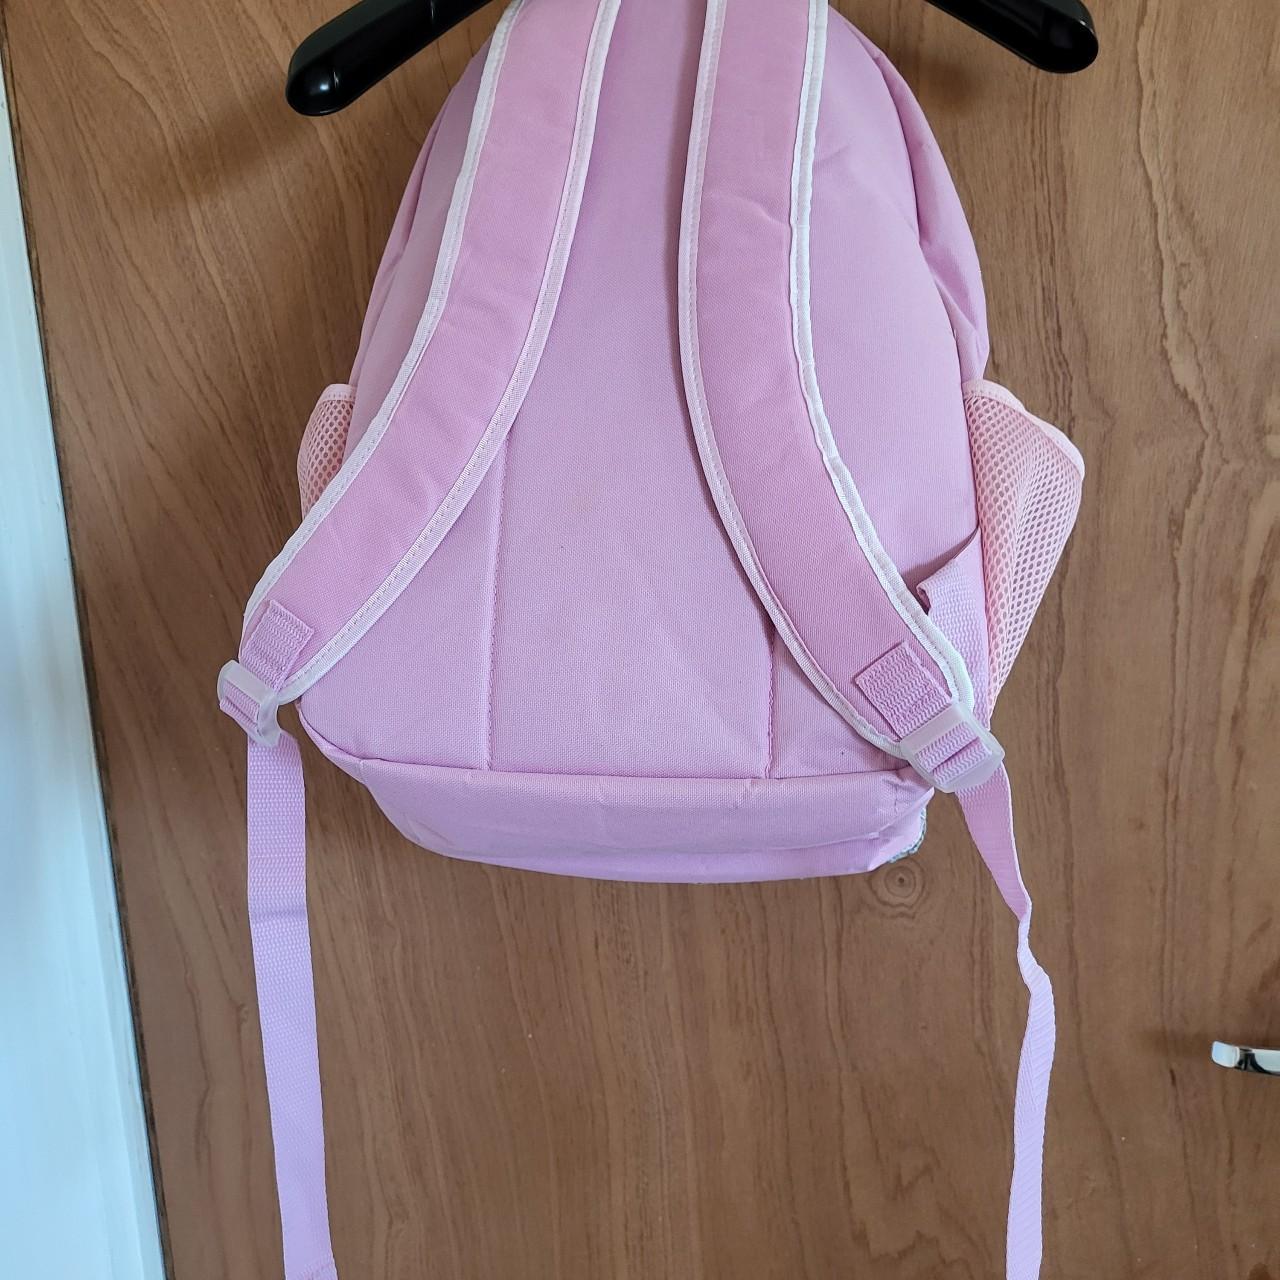 Unbranded Nylon Exterior Pink Bags & Handbags for Women | eBay